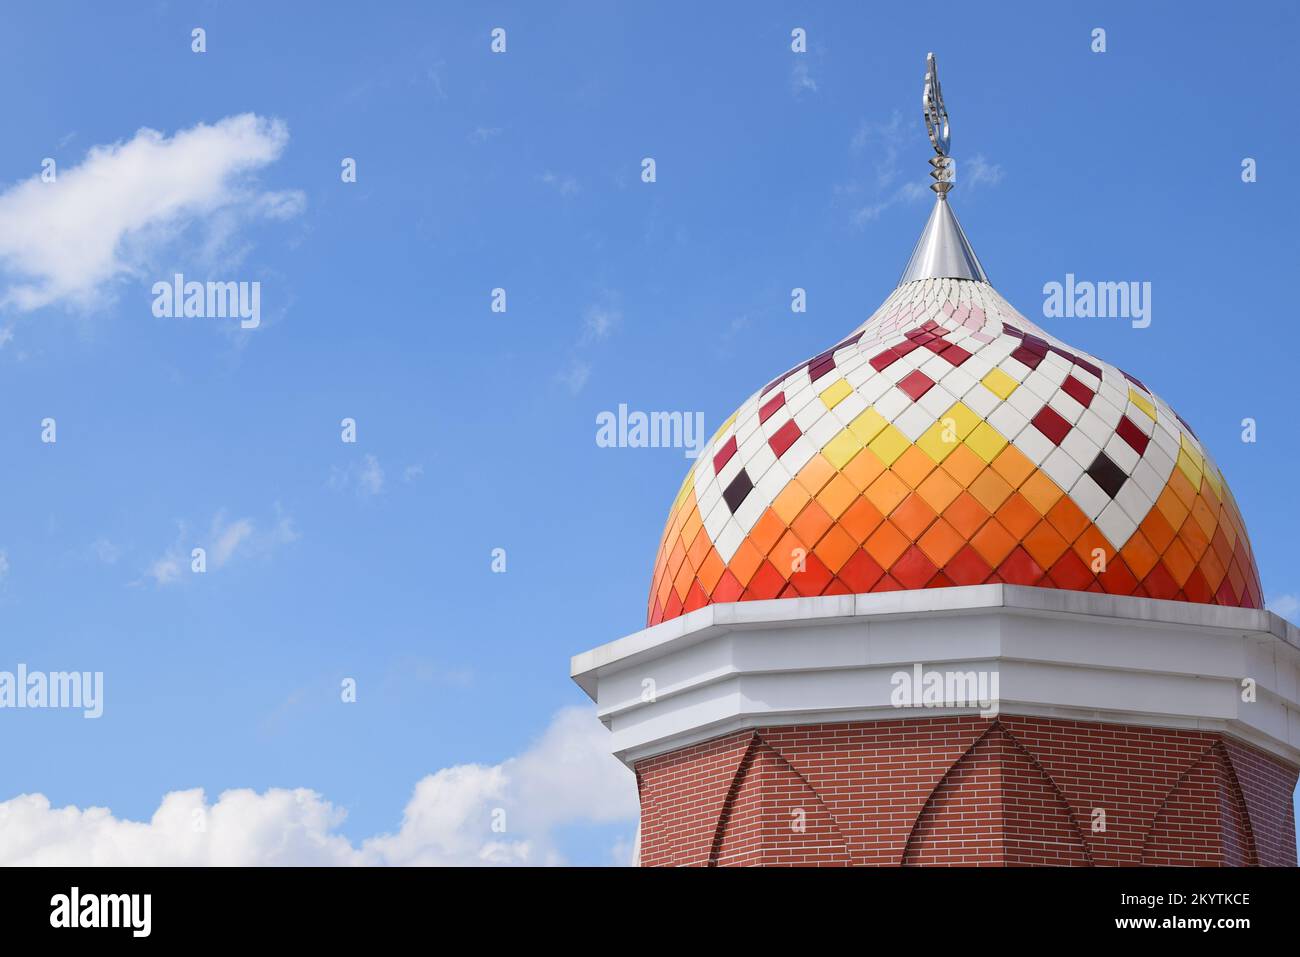 Moschee Towers in Indonesien. Moschee mit islamischem Hintergrund. Das Design der Moschee ist in der Tradition islamischer religiöser Architektur. Stockfoto